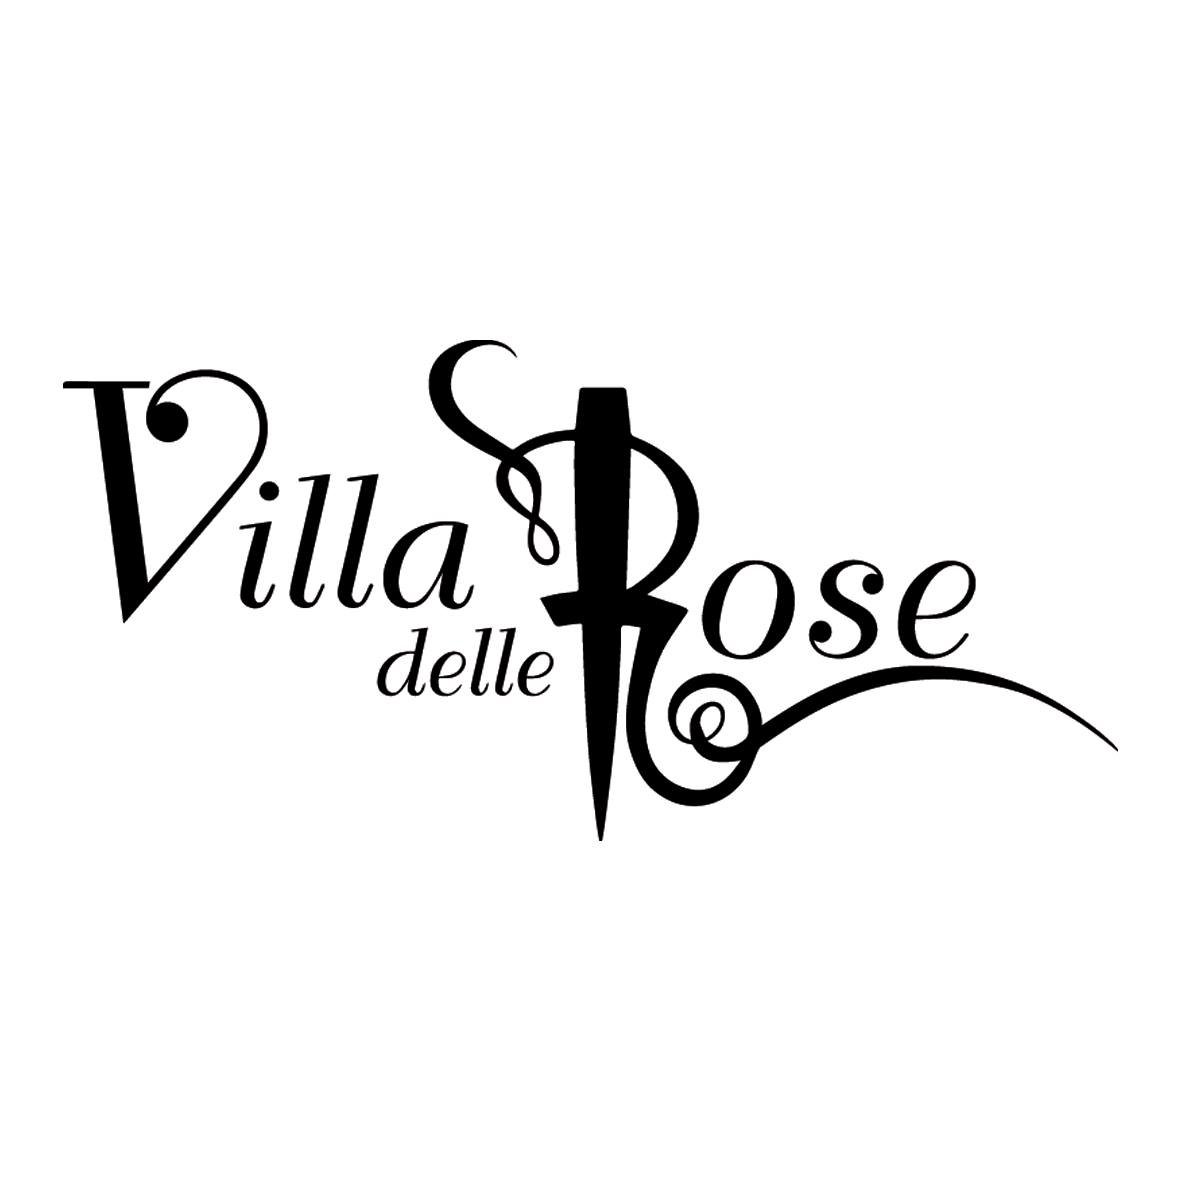 Discoteca Villa delle Rose